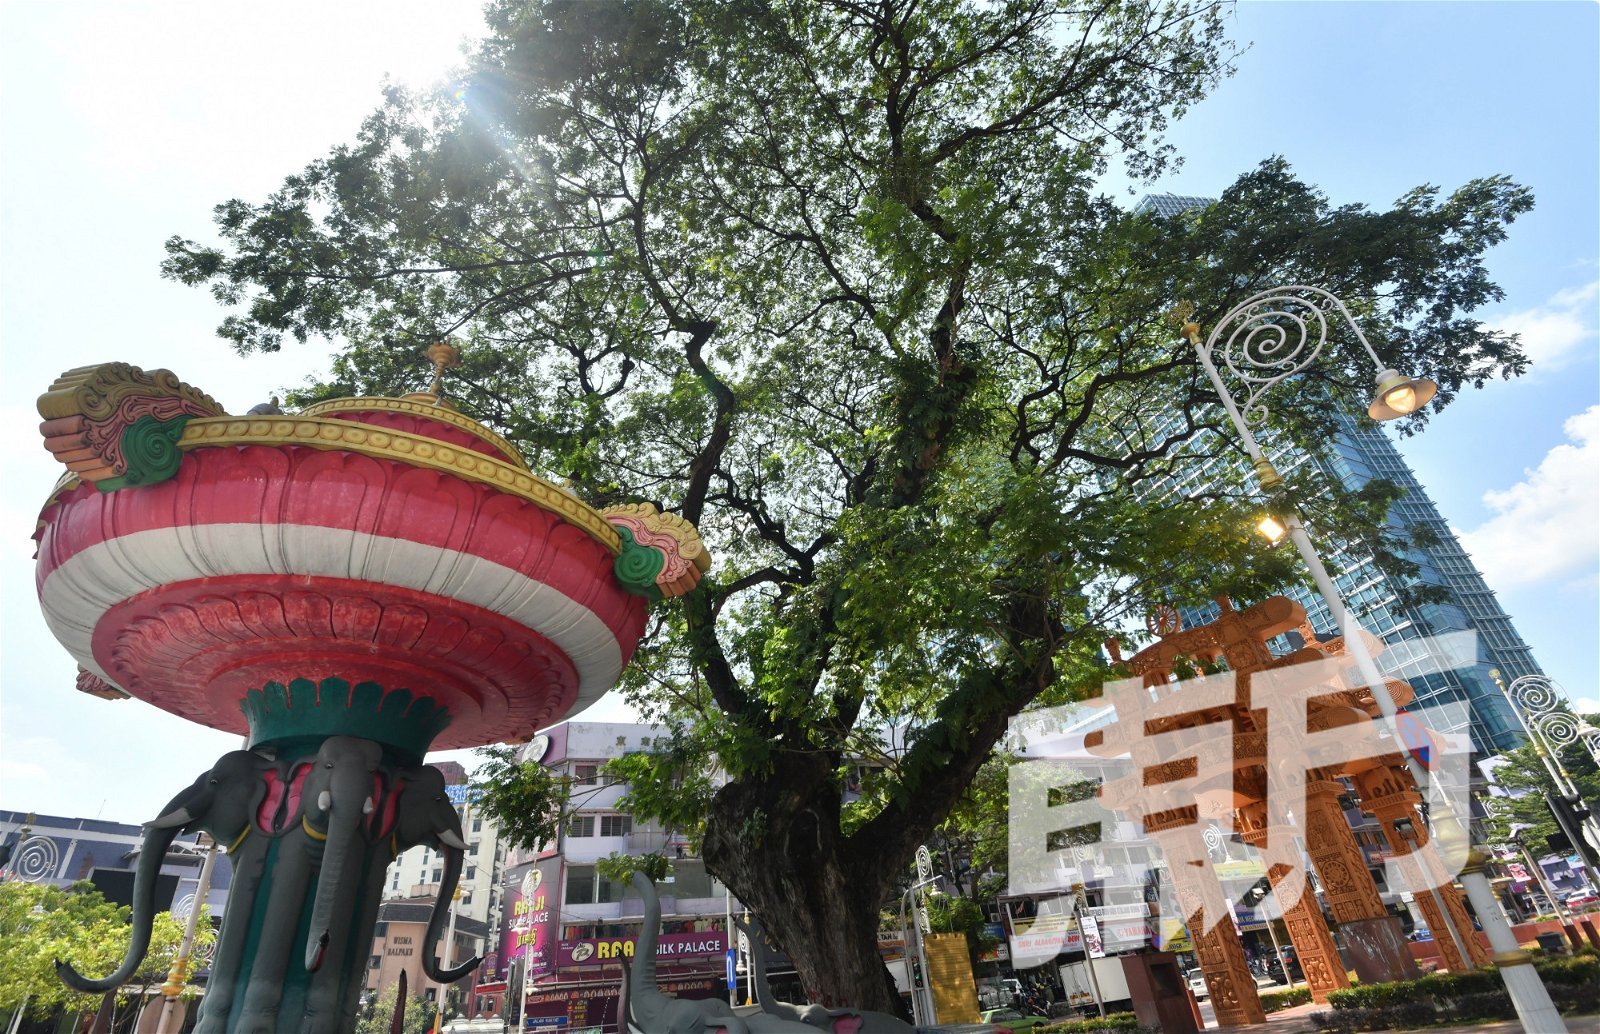 有小印度之称的十五碑，是吉隆坡最具传统文化特色的地方之一，这里不仅保留了深厚的印度文化底蕴，亦是宗教膜拜场所密集的地区，集结了锡兰佛寺、印度庙、华人寺庙、基督、天主教堂，甚至是清真寺，当地在早年展开提升及美化工程之际，仍留下一些茂盛老树，让当地街道景致优雅，散发出一种古朴的韵味。